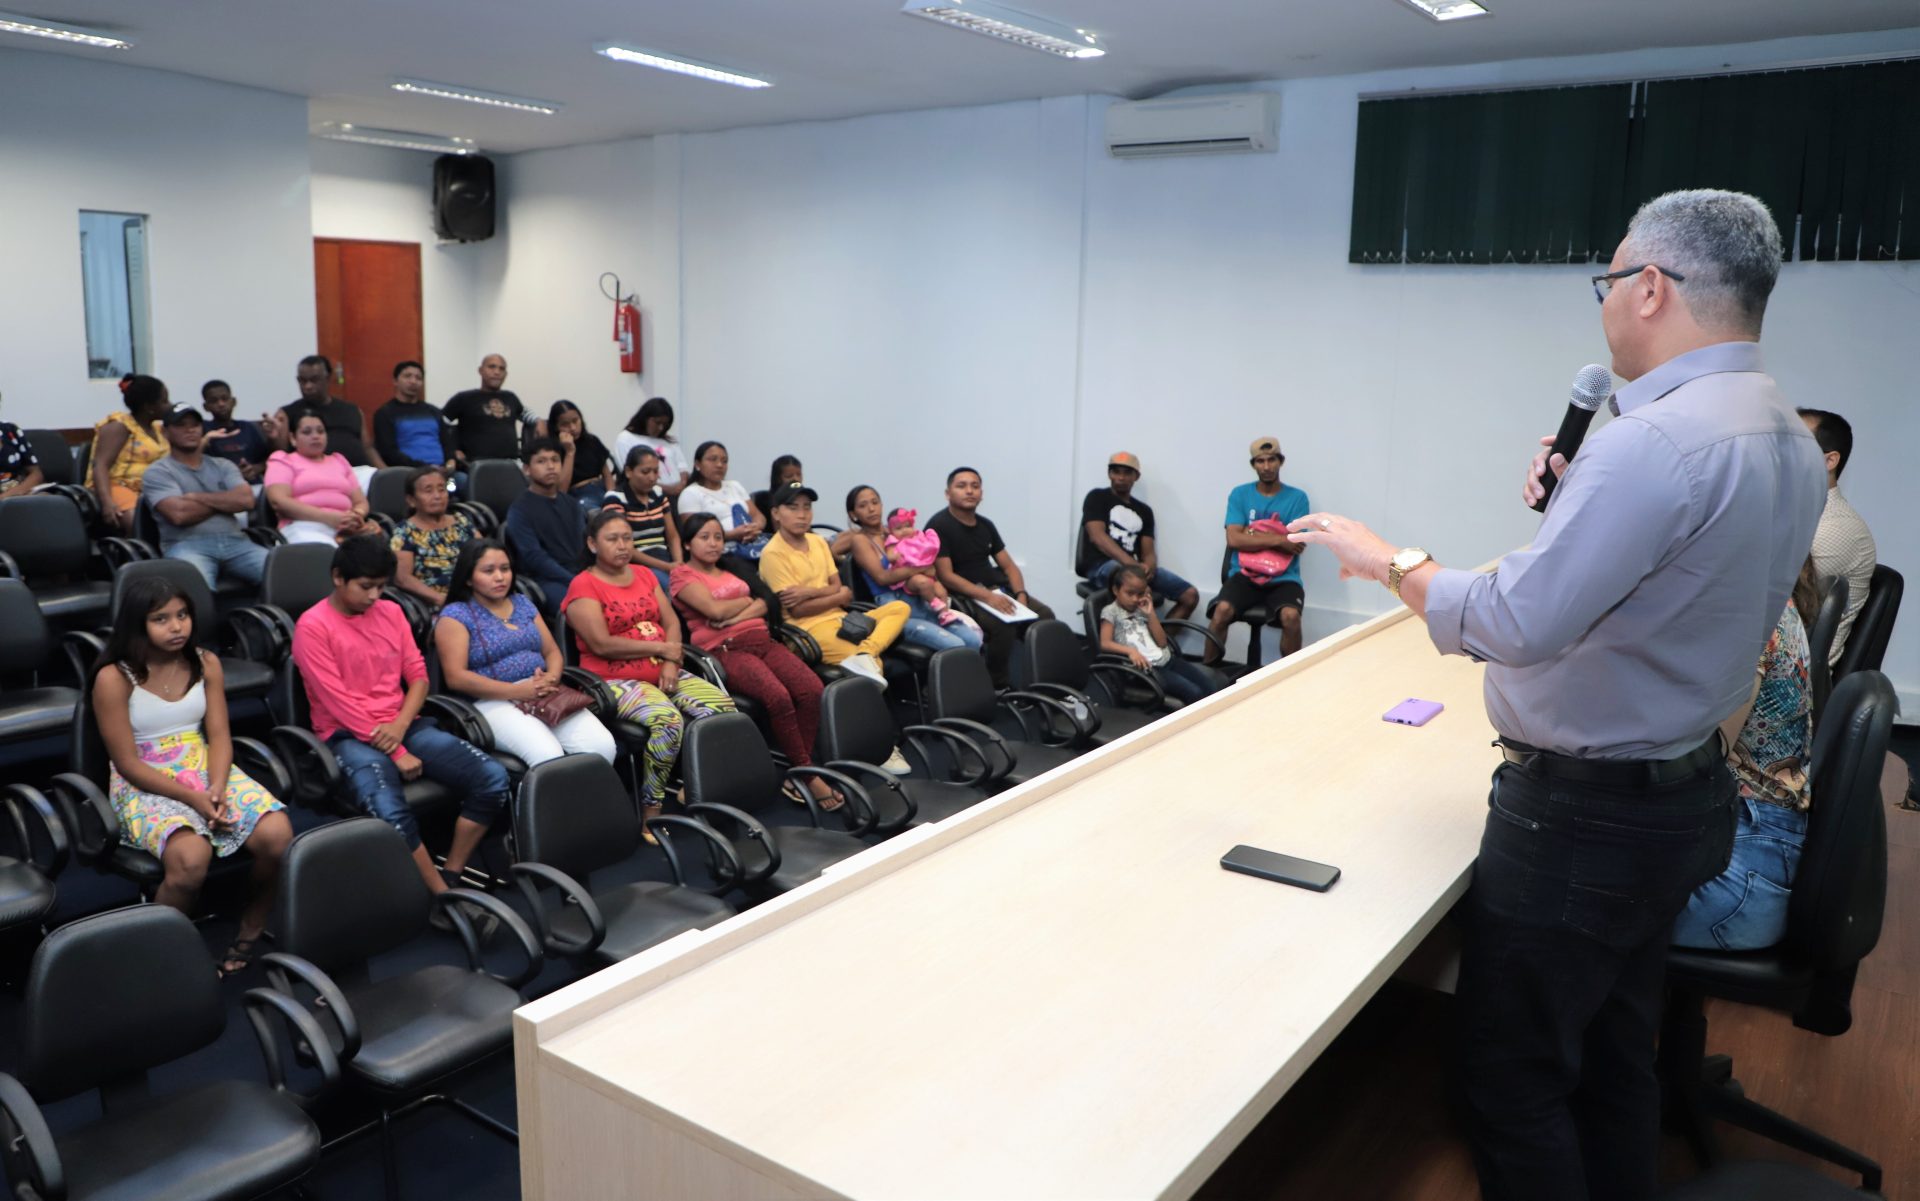 Para sanar a barreira da comunicação, em março deste ano, a prefeitura e o IFTO (Instituto Federal do Tocantins) mobilizaram 20 imigrantes, entre cubanos e venezuelanos, para aprenderem português